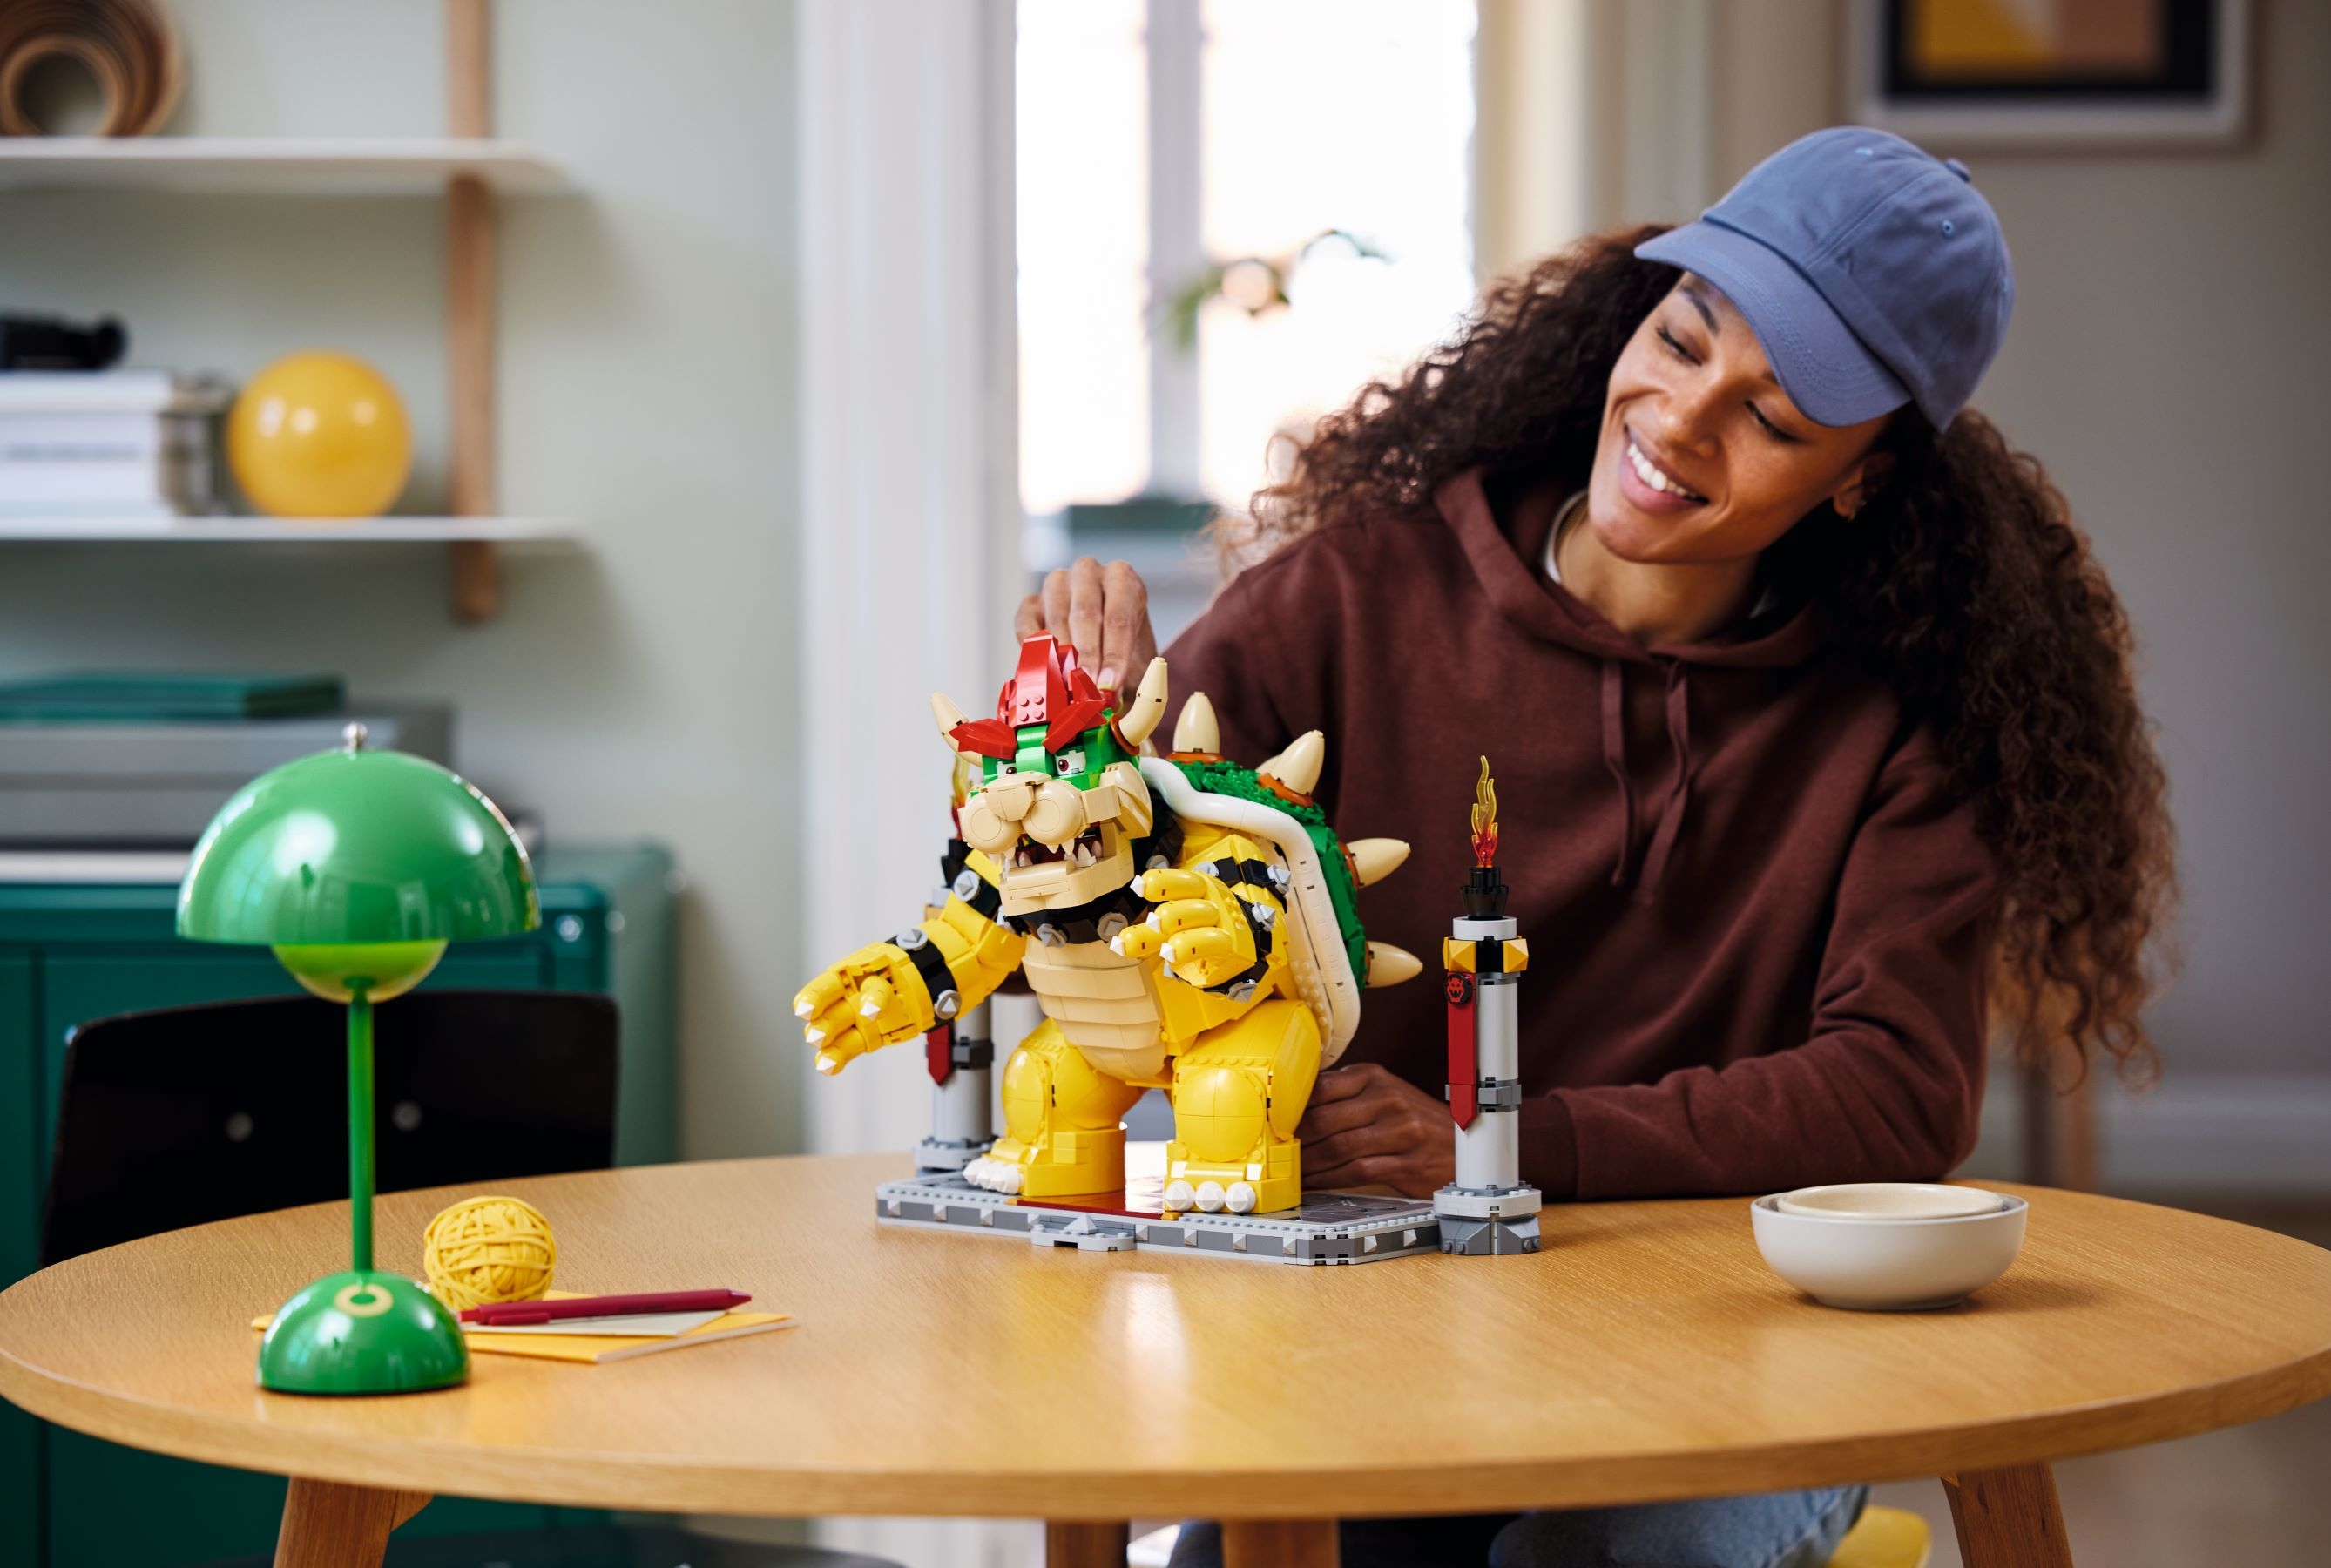 LEGO Super Mario - Le Puissant Bowser - Figurine de Collection